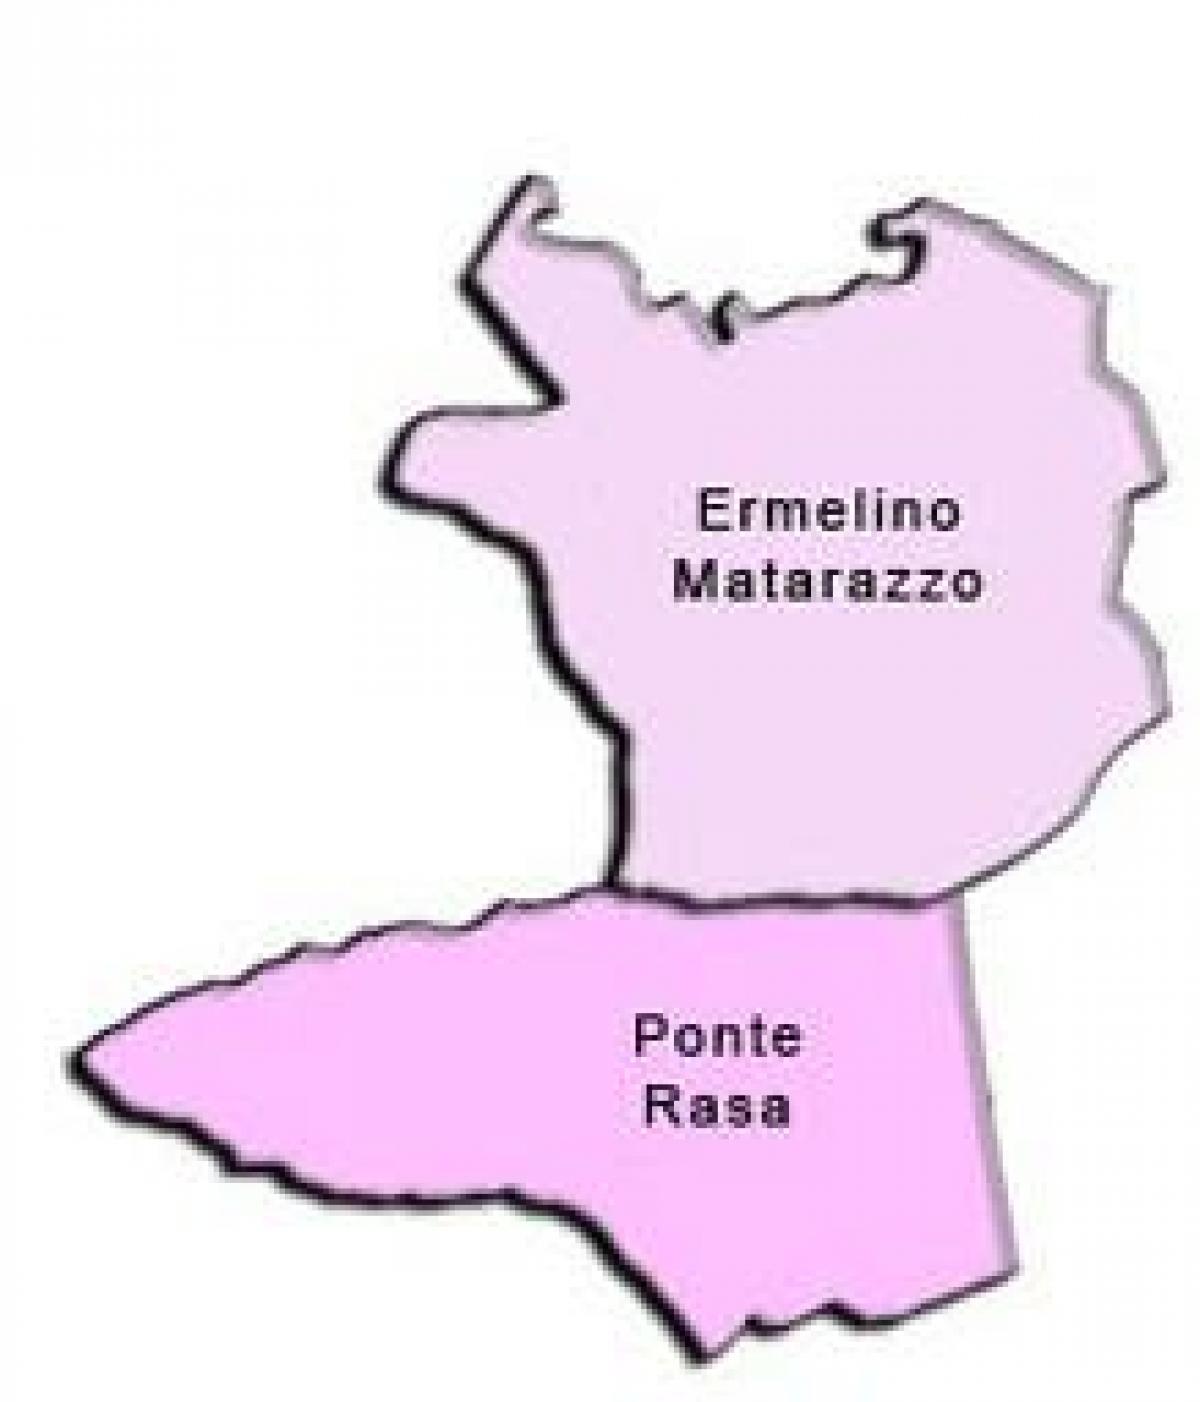 خريطة Ermelino Matarazzo الفرعية.